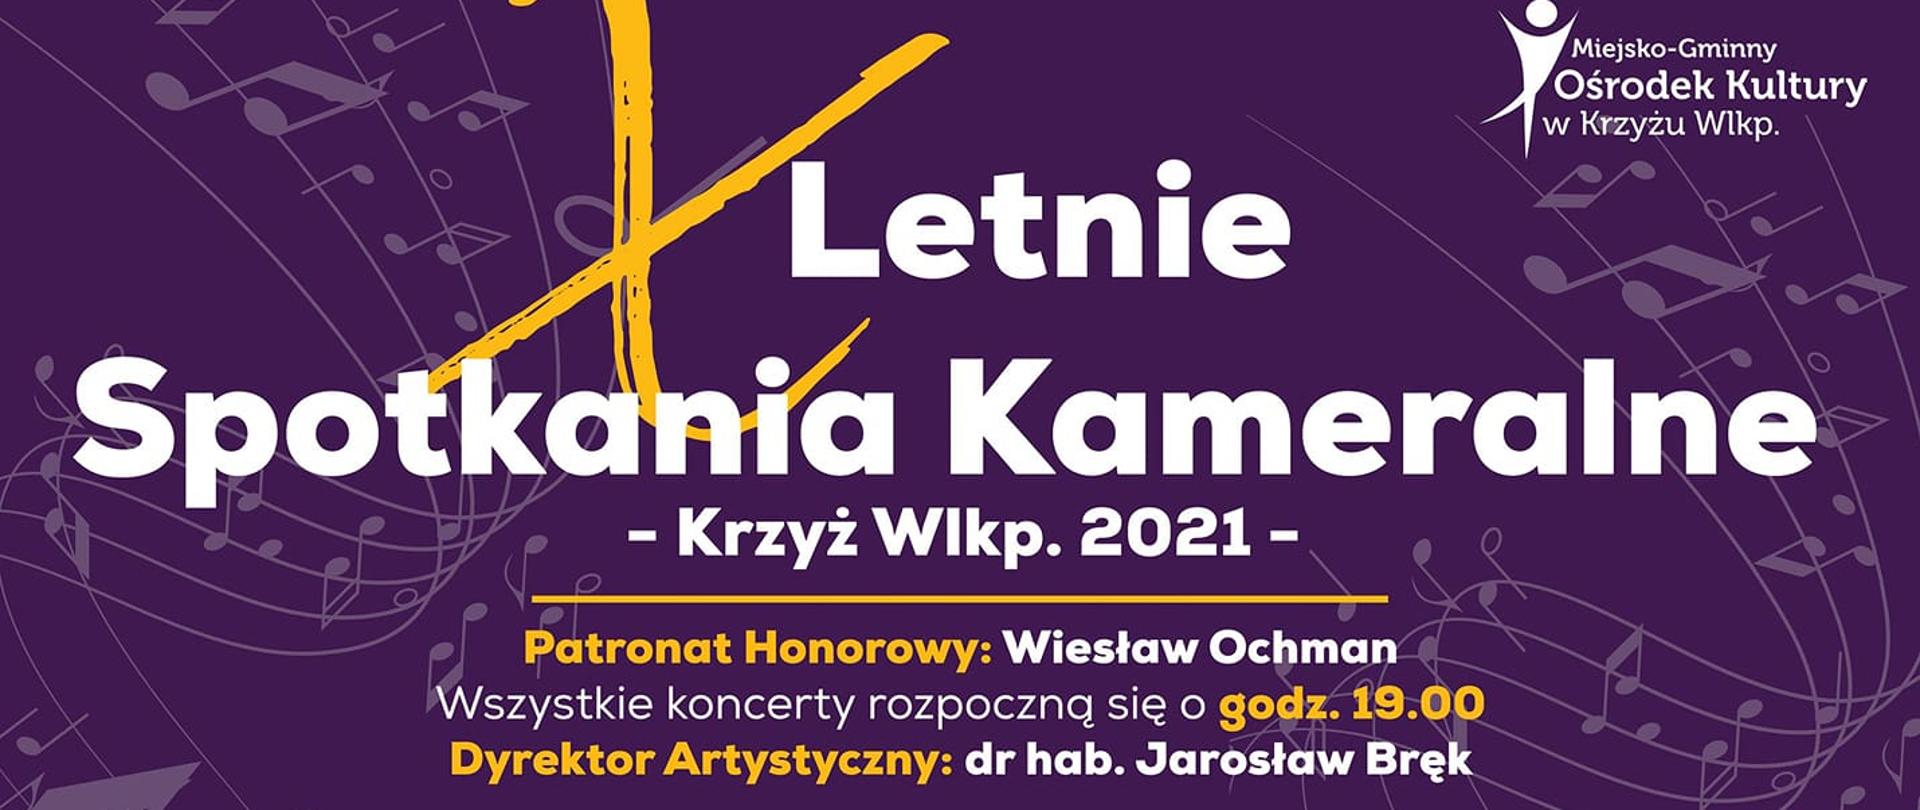 X Letnie Spotkanie Kameralne - Krzyż Wielkopolski 2021